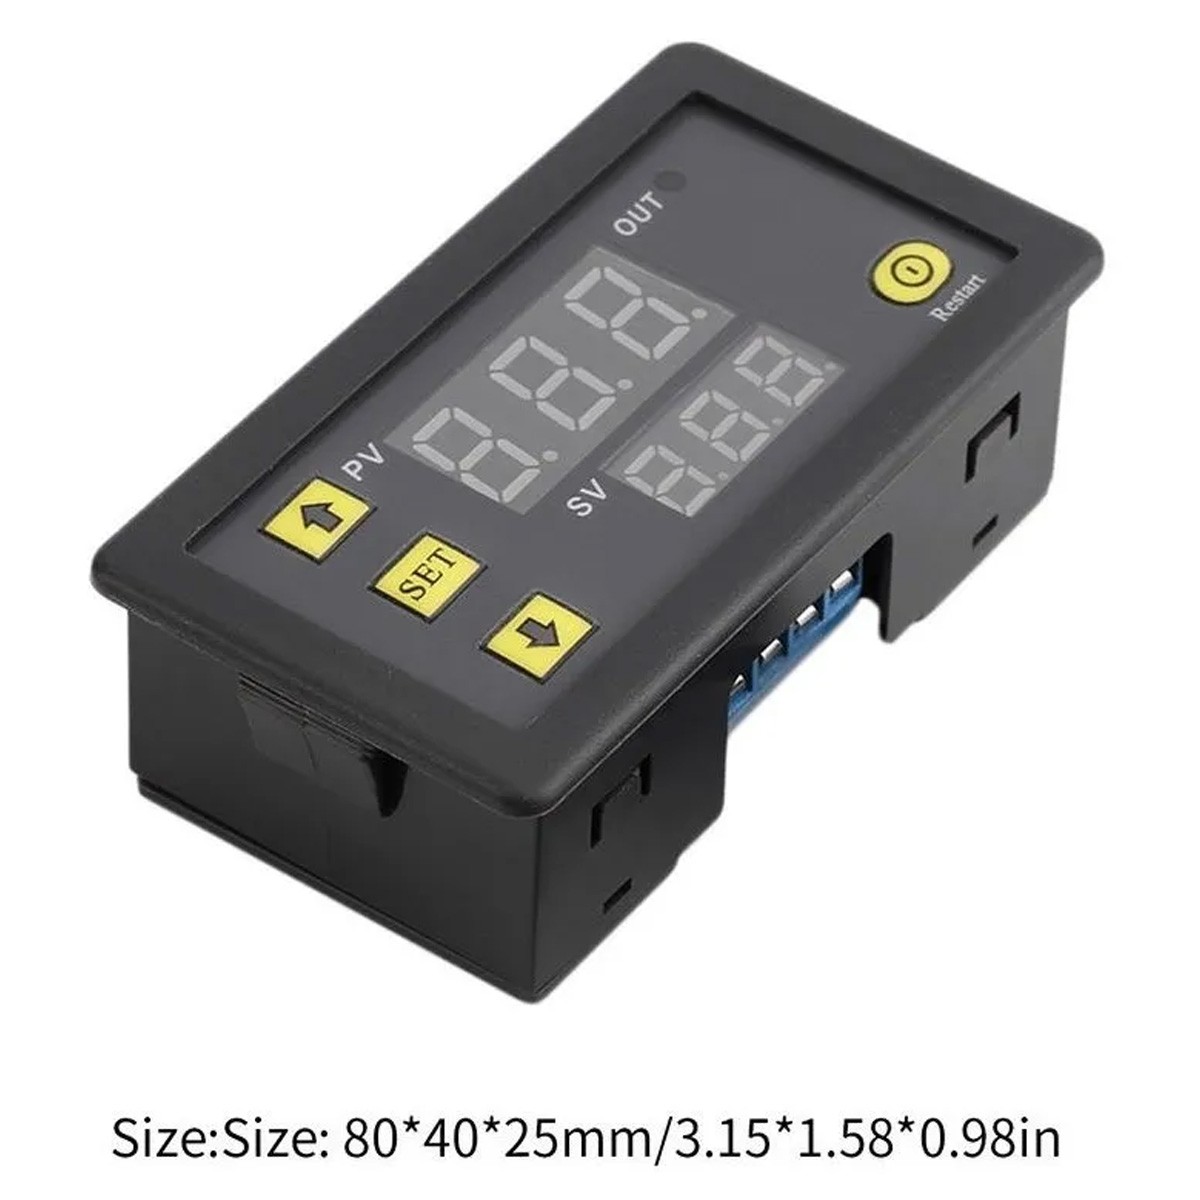 Termostato Digital W3230 12v - Controle De Temperatura